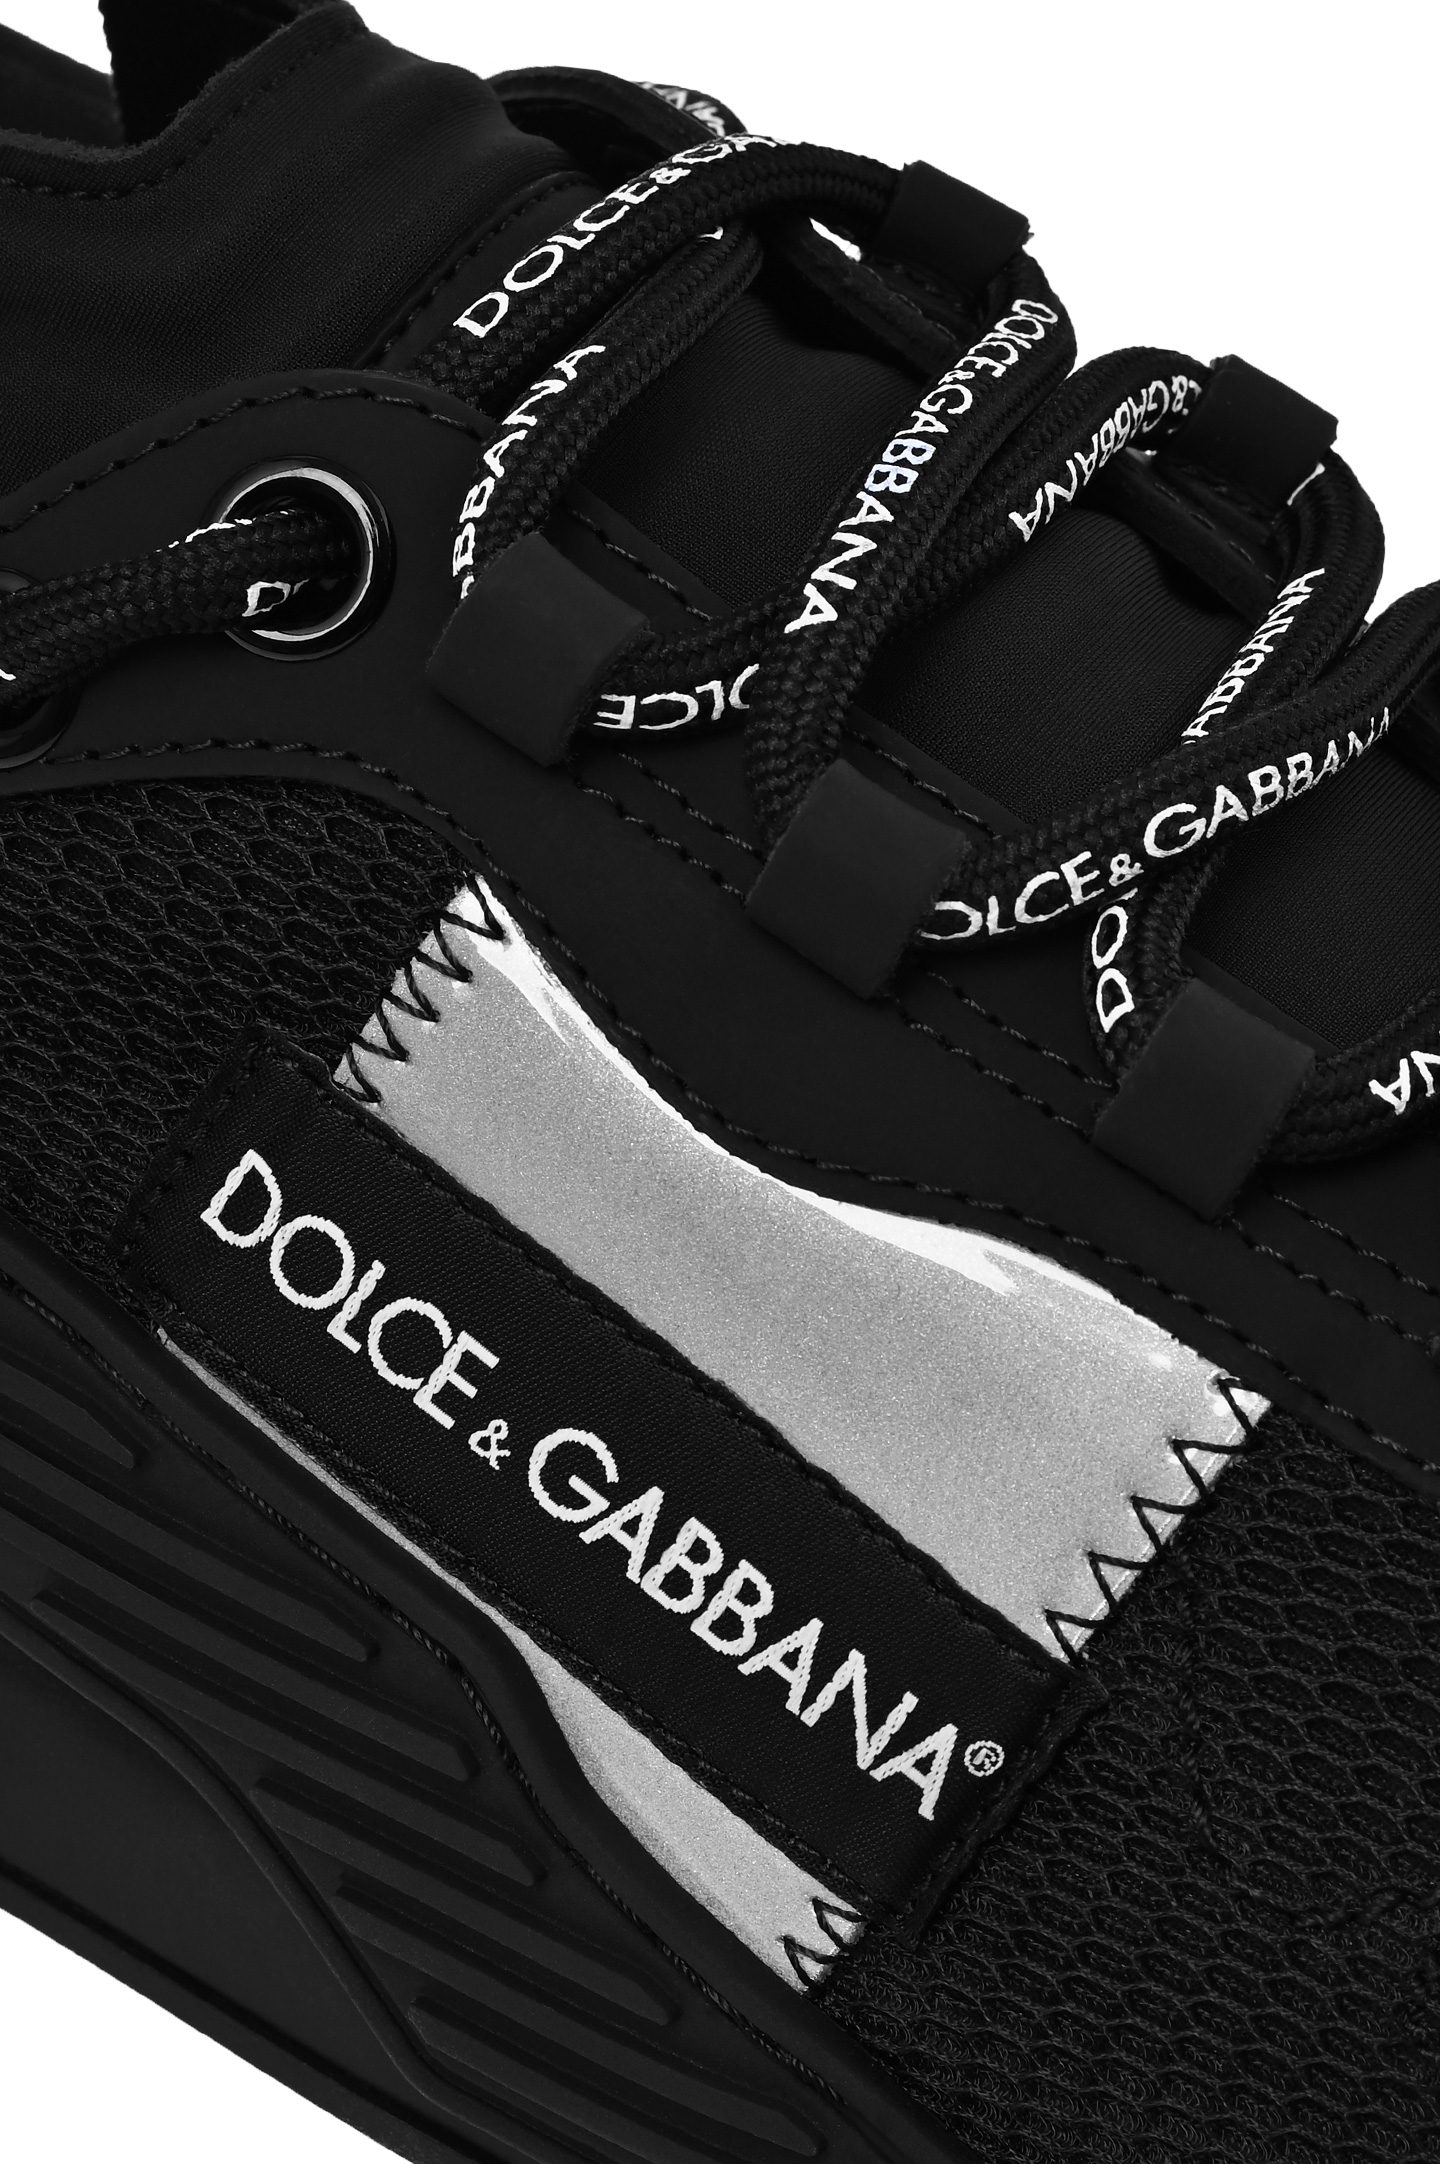 Кроссовки DOLCE & GABBANA CS1769 AJ968, цвет: Черный, Мужской